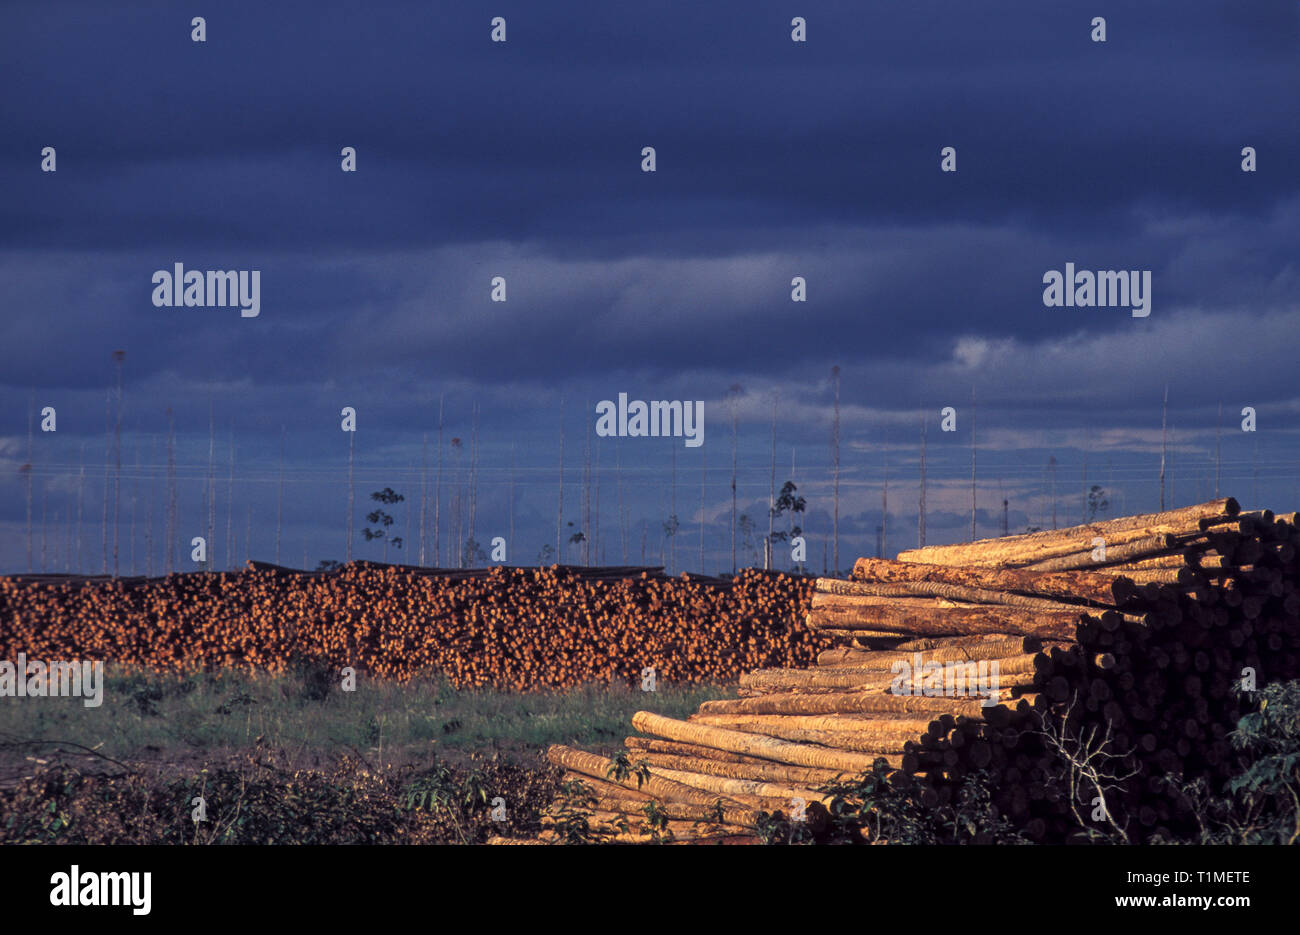 Bois d'eucalyptus, très estimé par le charbon de bois, des pâtes et papiers, de l'état d'Espirito Santo, sud-est du Brésil. Banque D'Images